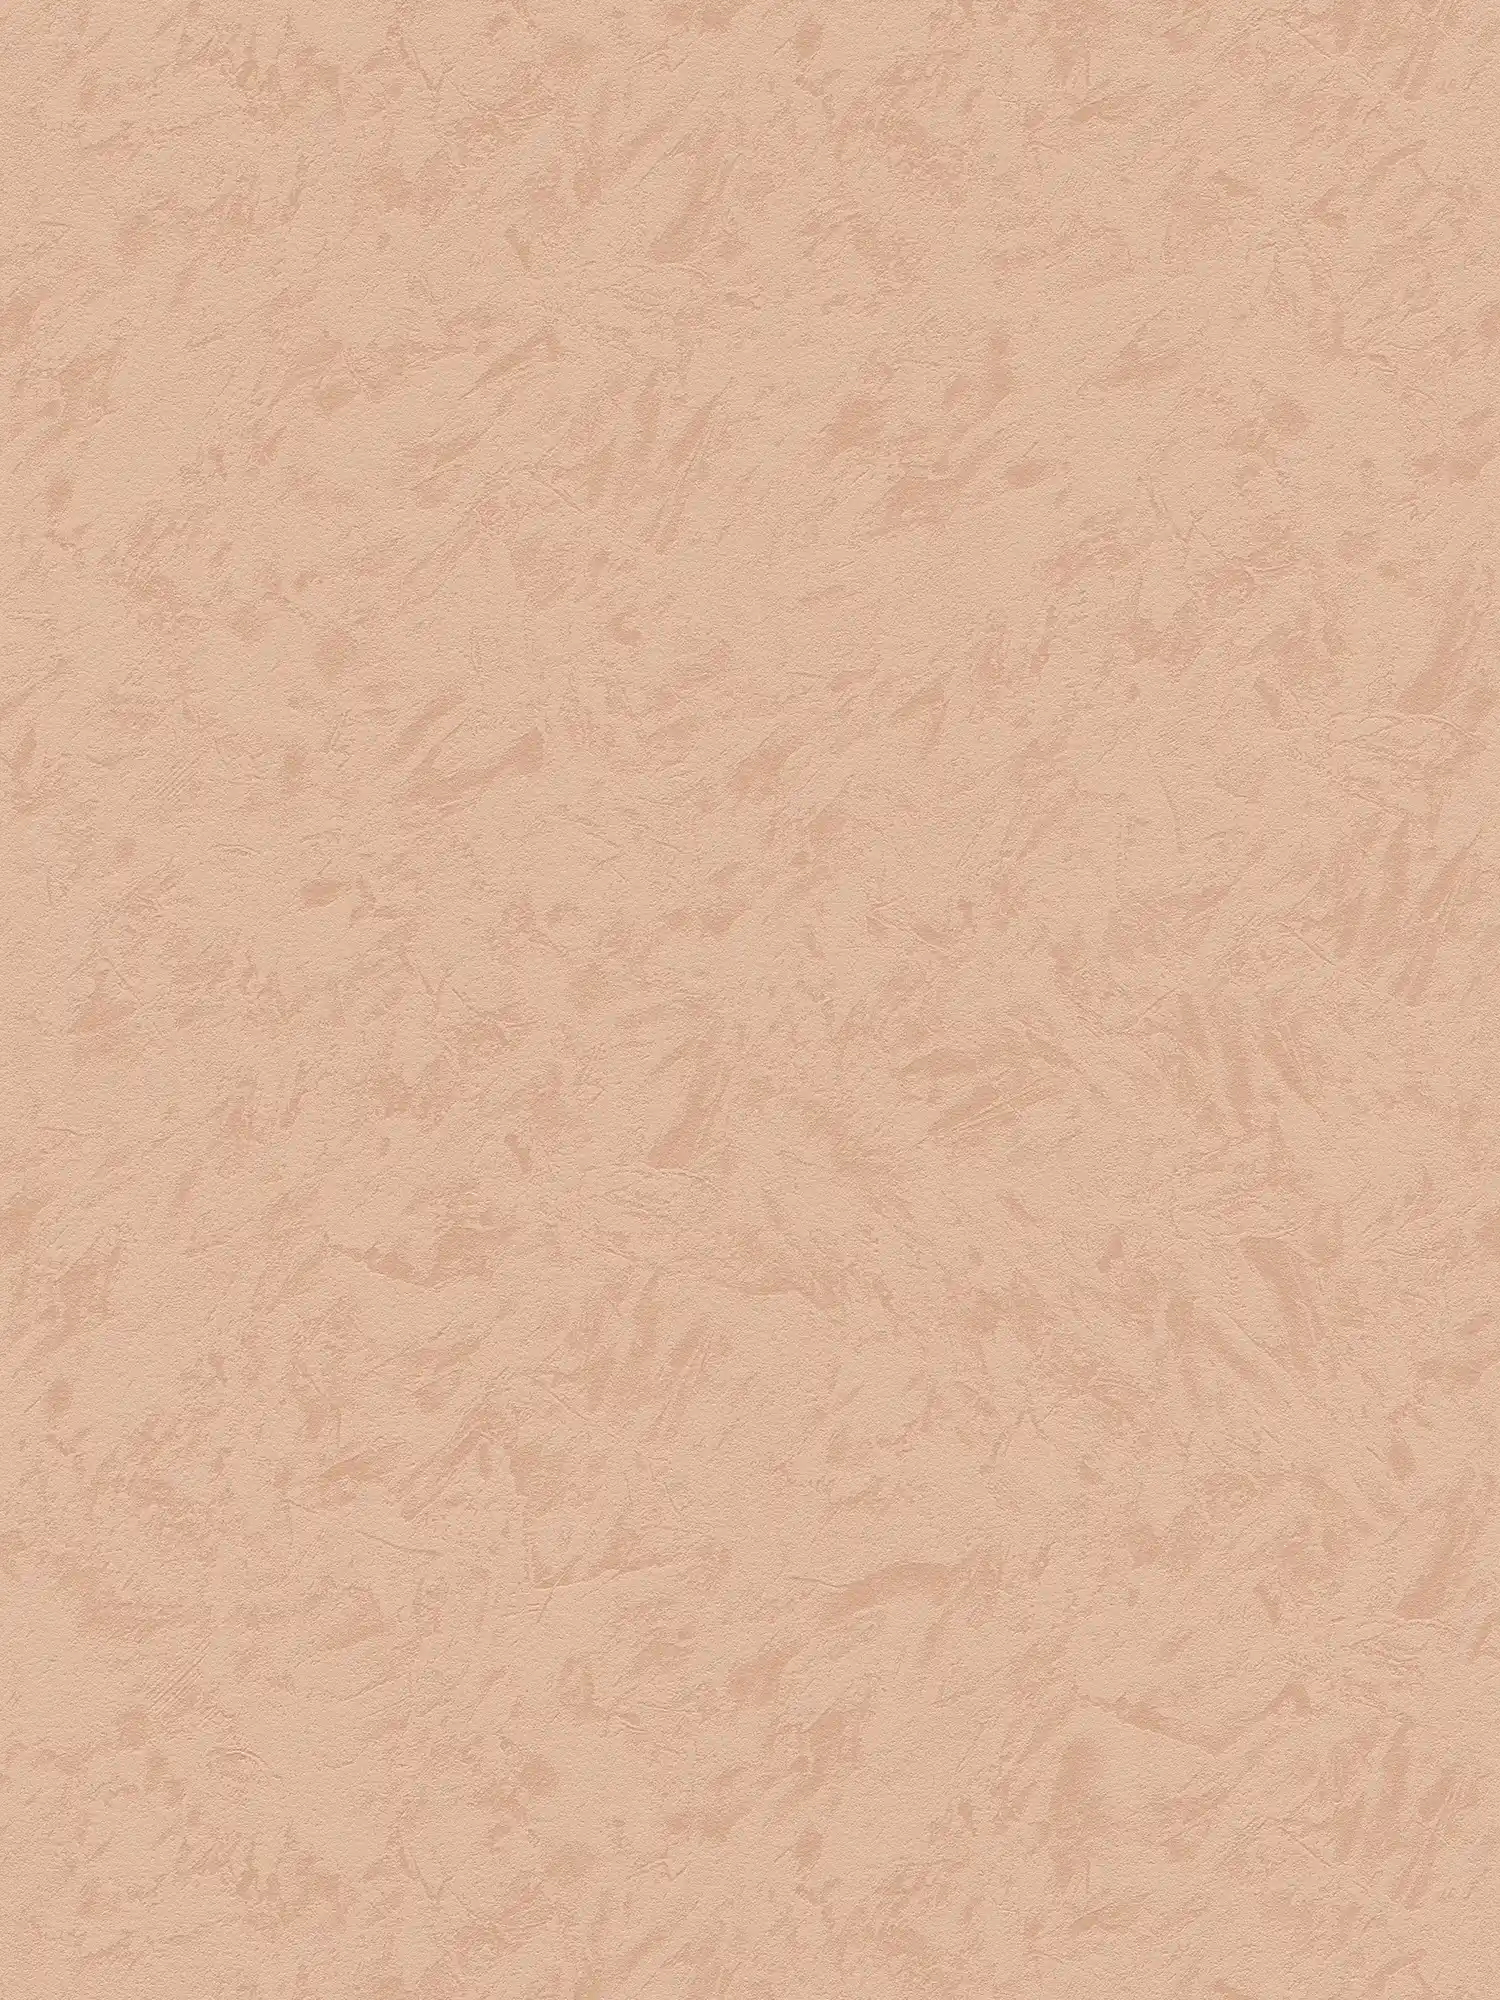             Carta da parati in tessuto non tessuto color terracotta con aspetto pulito - arancione
        